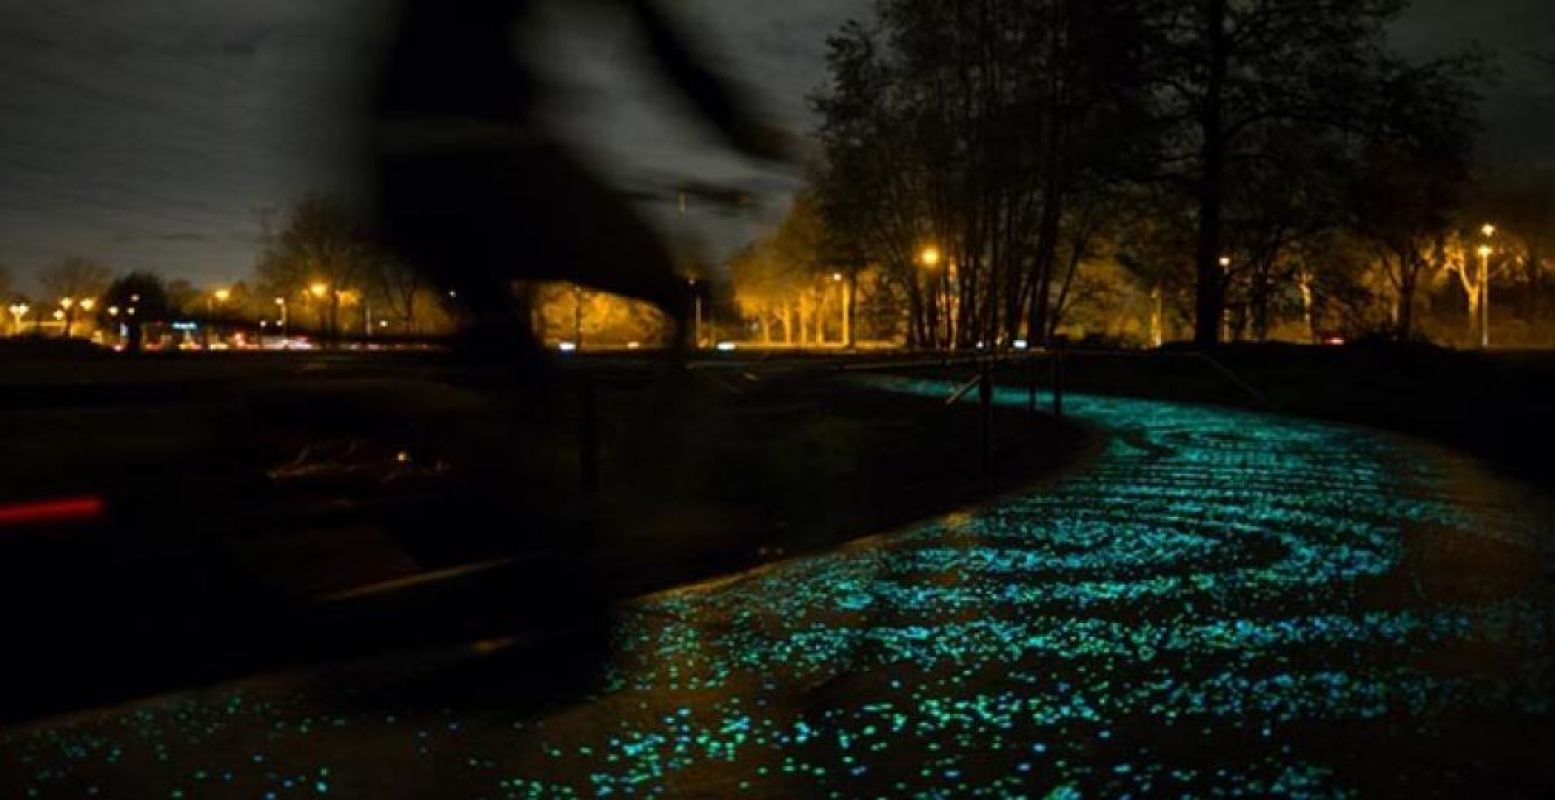 In dit kunstige fietspad zitten lichtgevend parels verstopt, die de illusie wekken van een sterrenhemel! Foto: Studio Roosegaarde